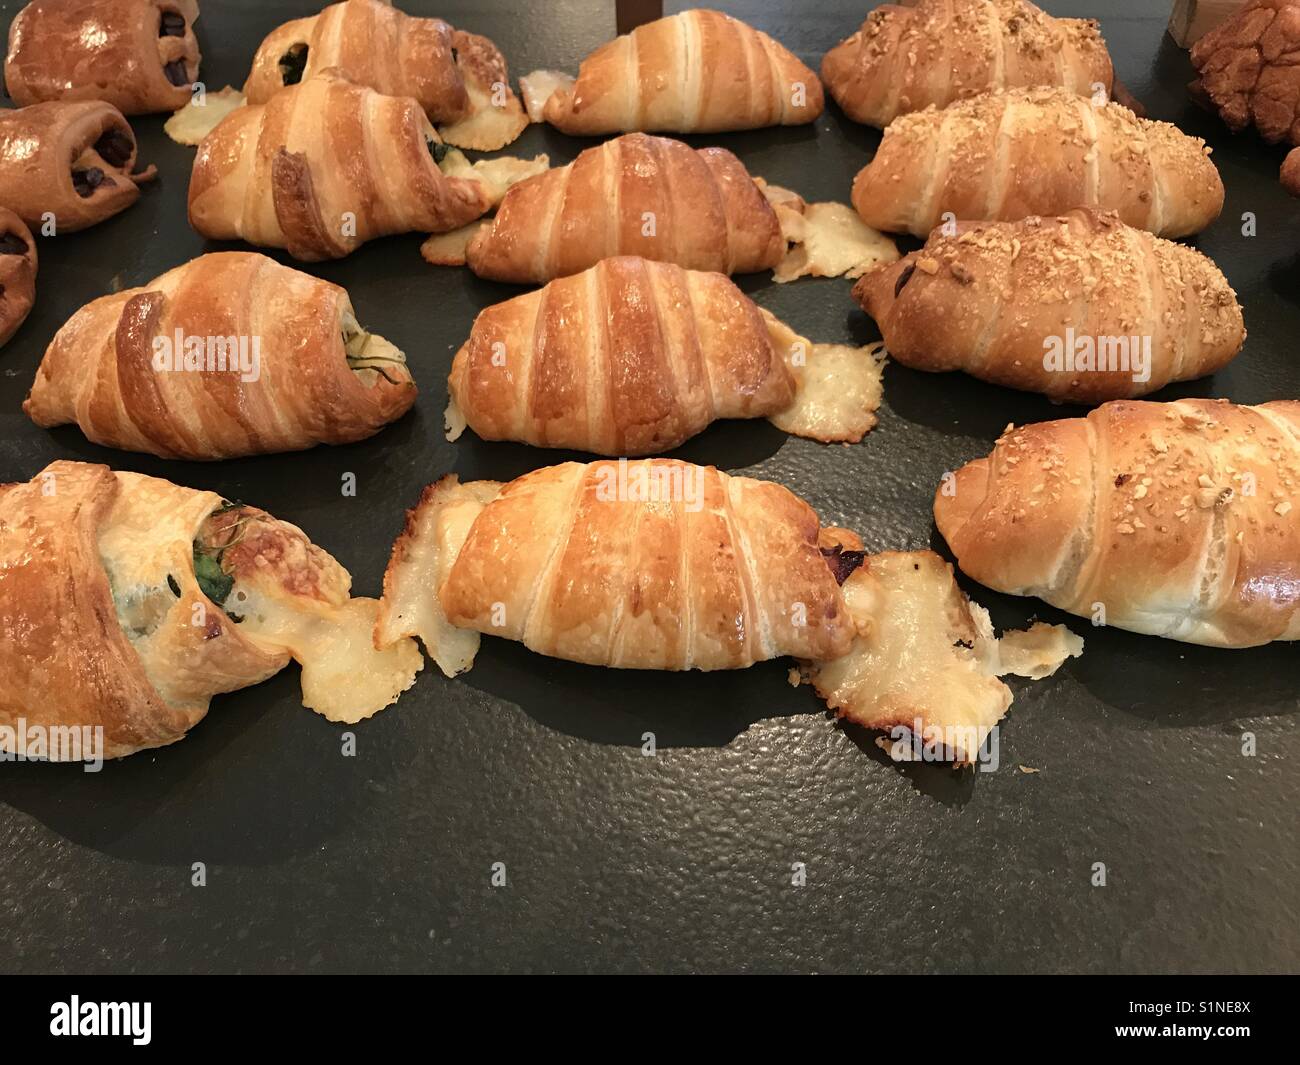 Cheesy croissant Stock Photo